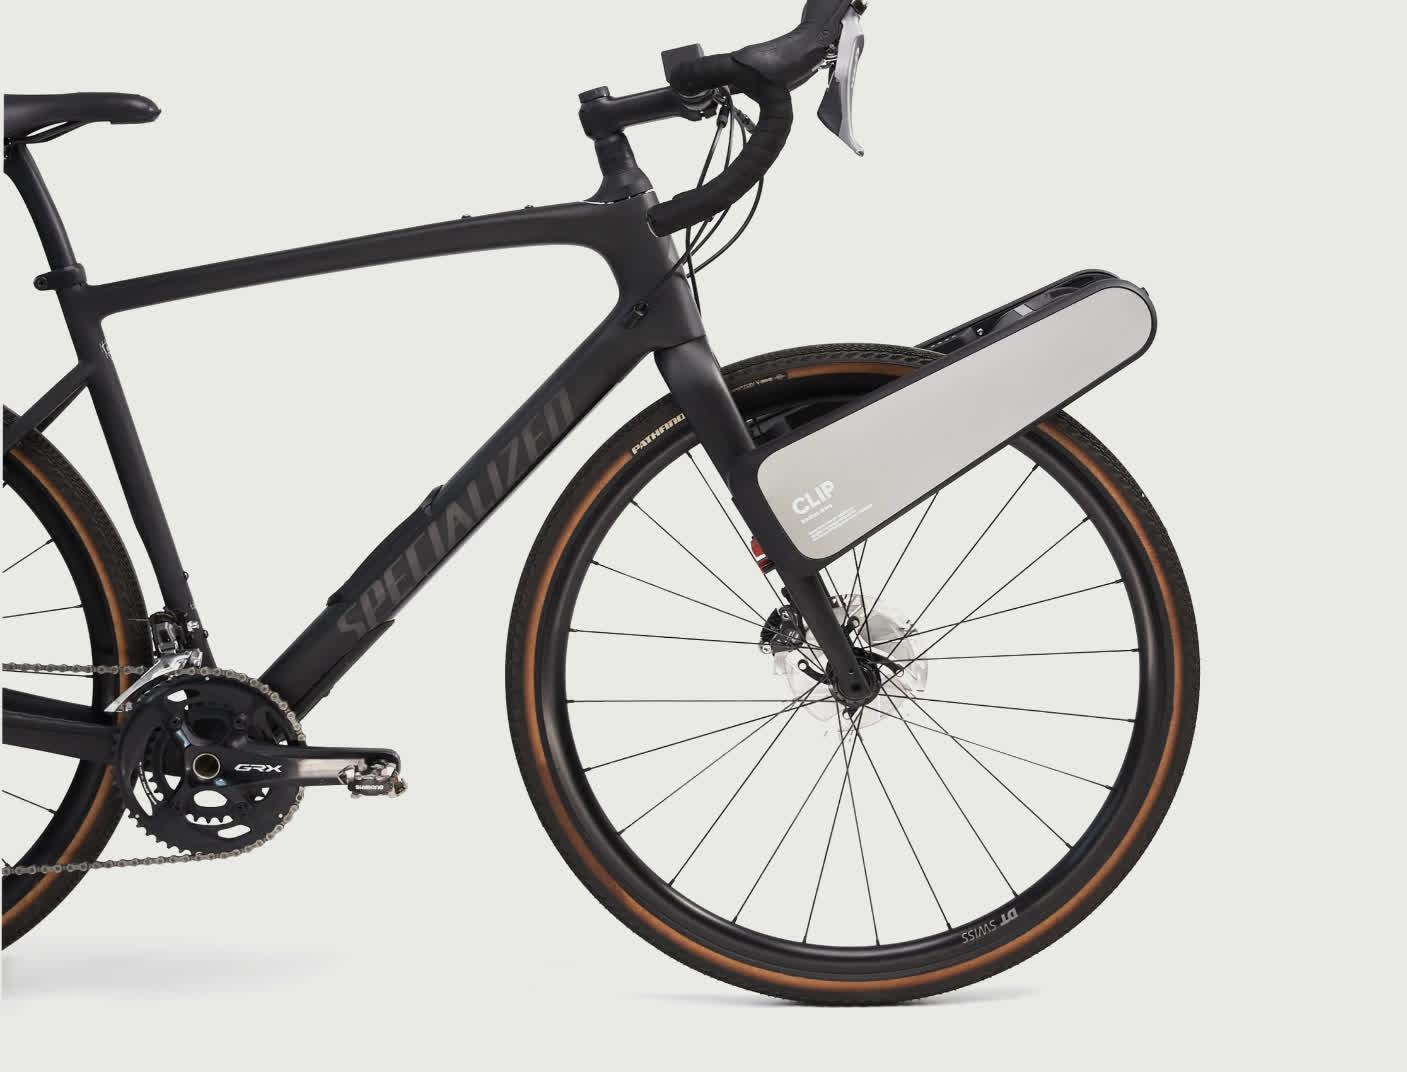 Clip puede hacer que tu bicicleta sea eléctrica en segundos sin herramientas, baterías incluidas